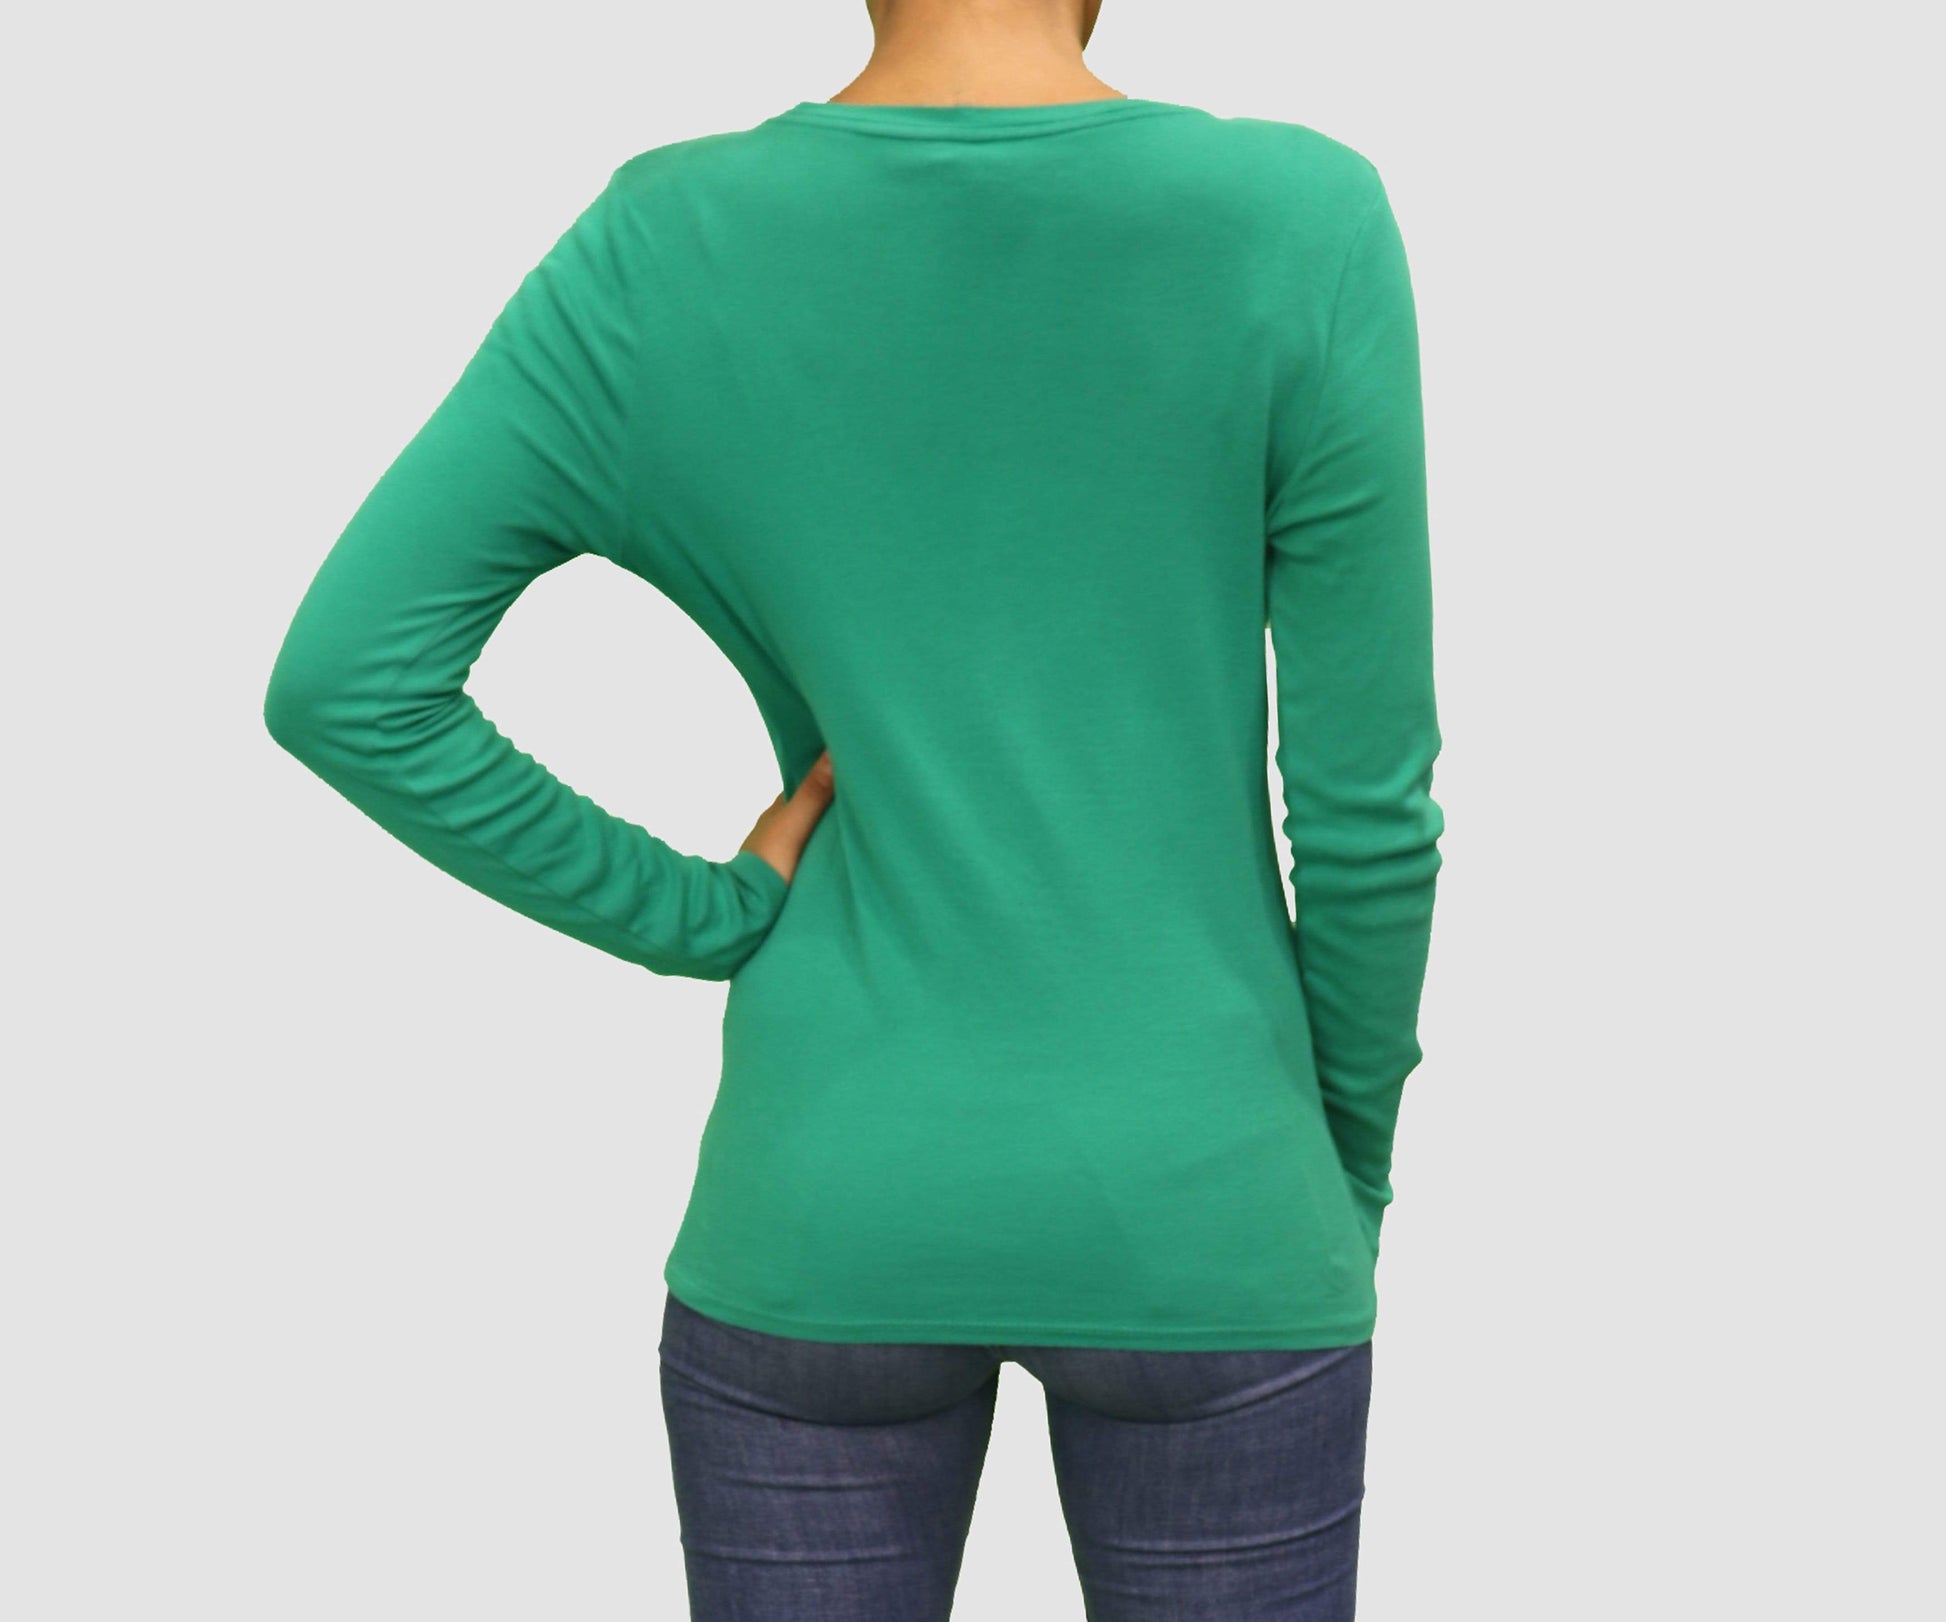 MERONA Womens Tops Medium / Green Long Sleeve Top